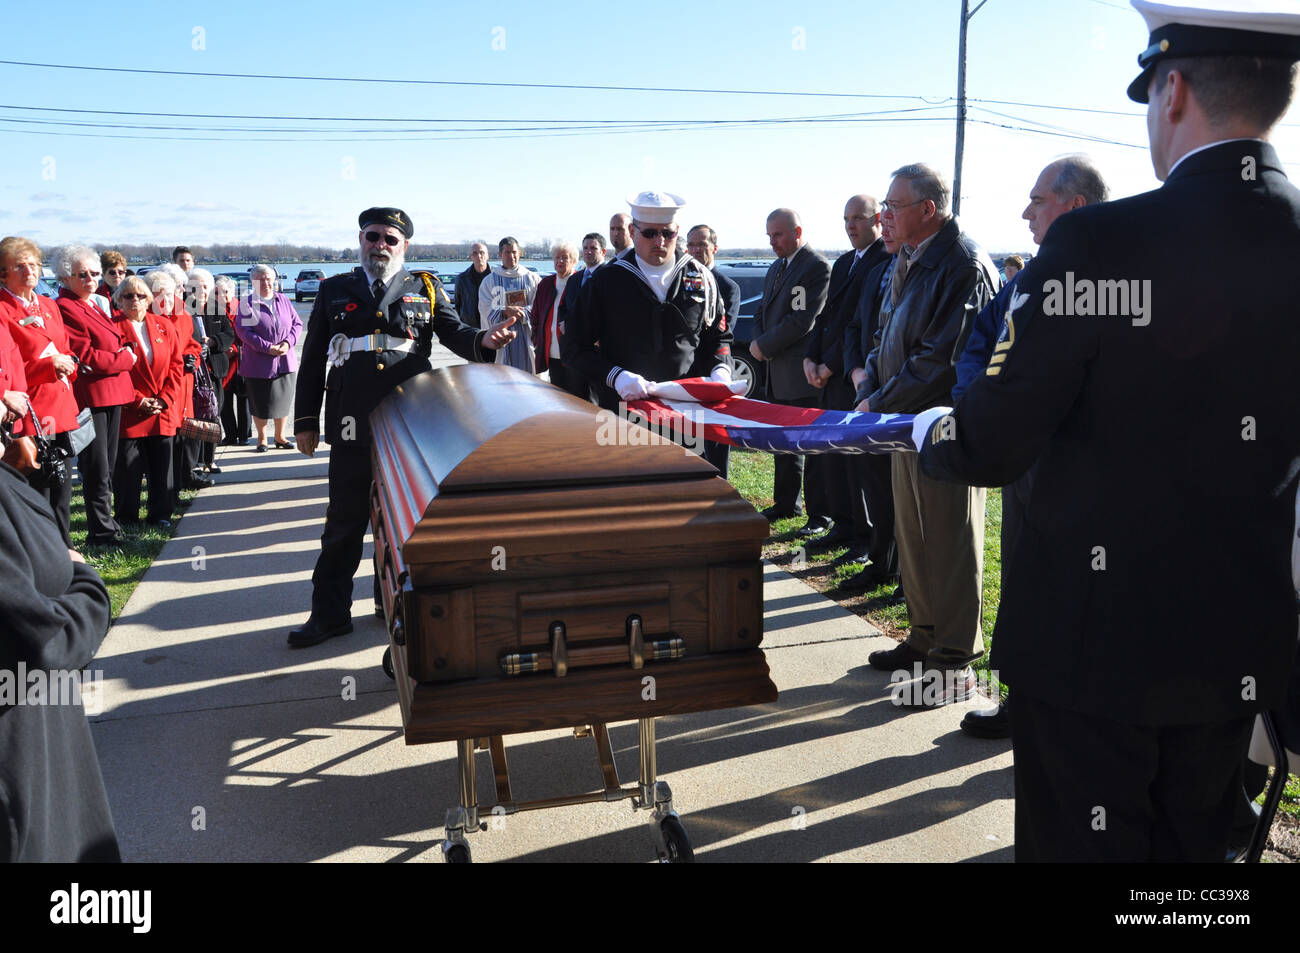 Las honras fúnebres militares y el plegado de la enseña nacional tras un servicio funerario. Foto de stock